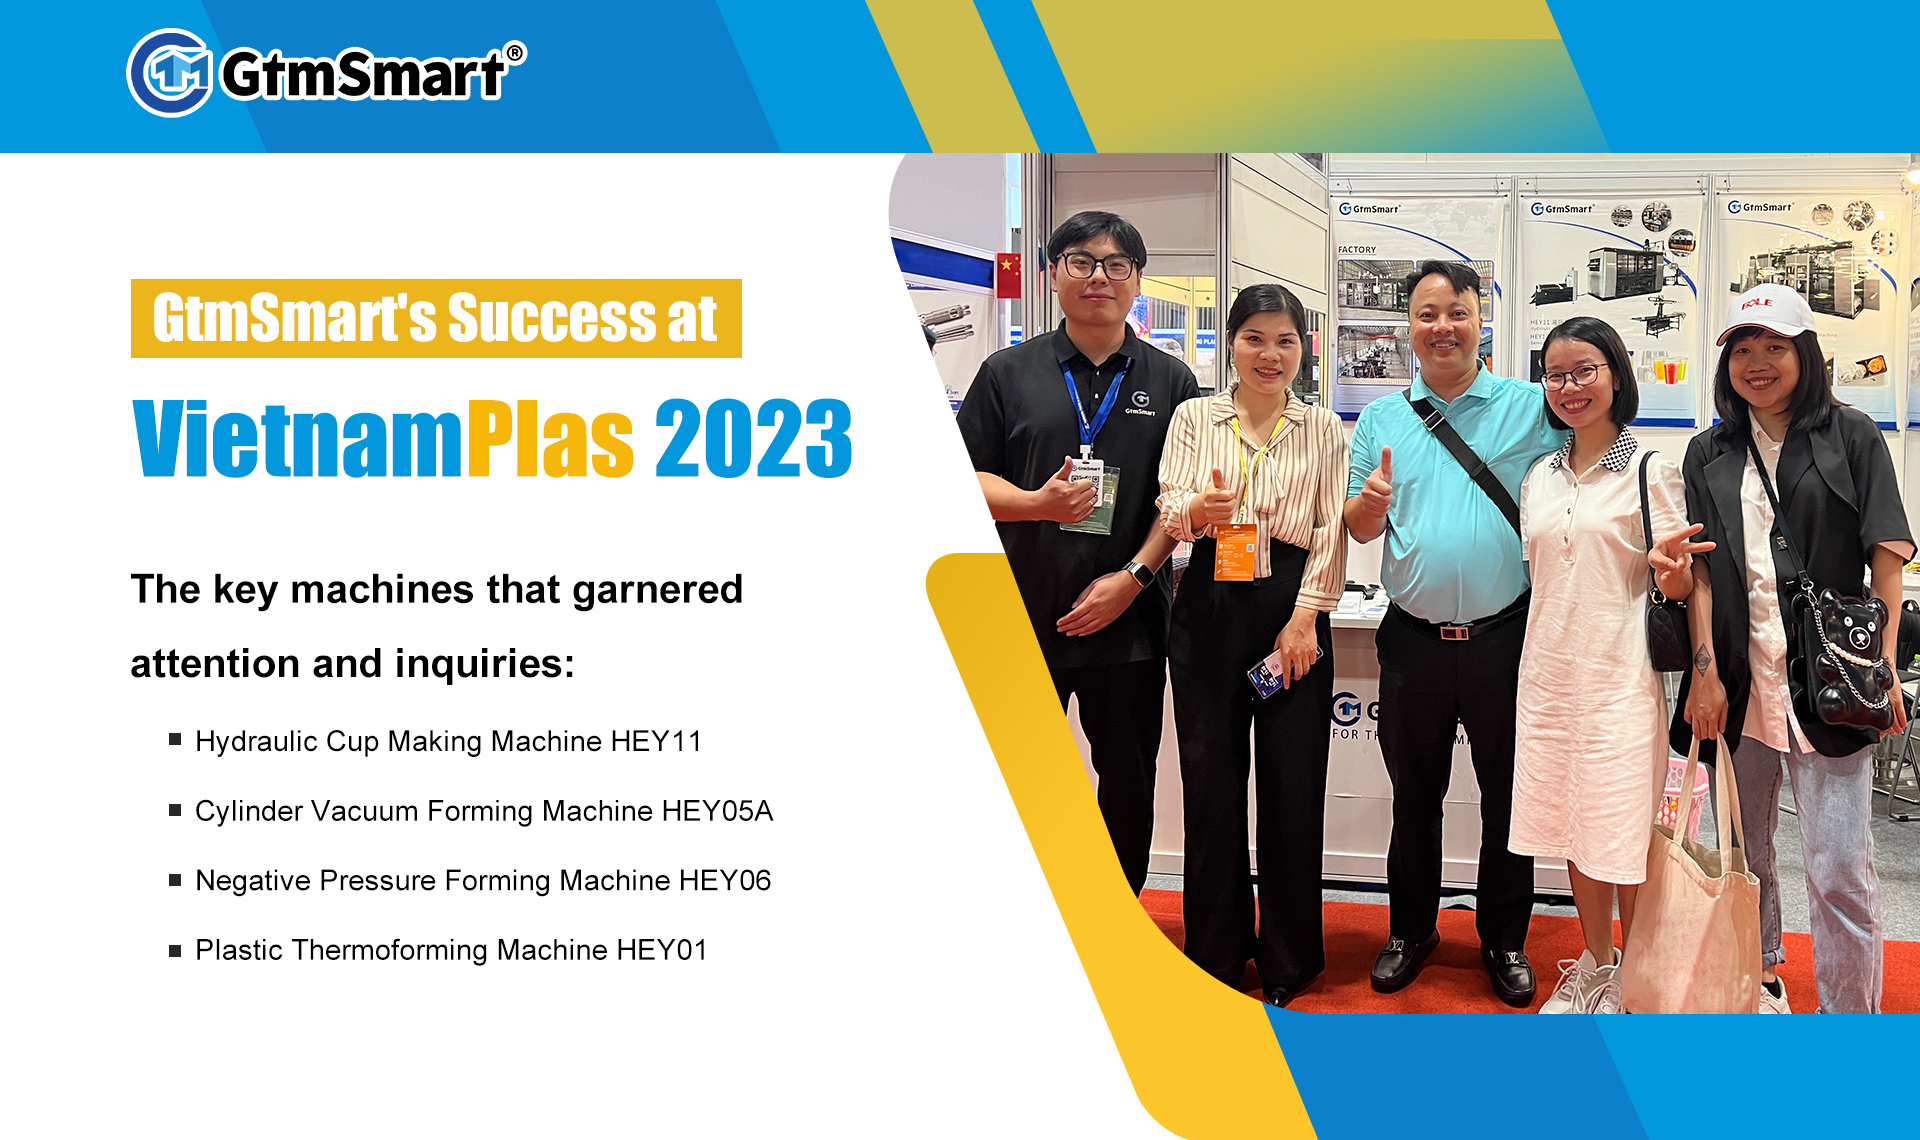 GtmSmart's Success at VietnamPlas 2023